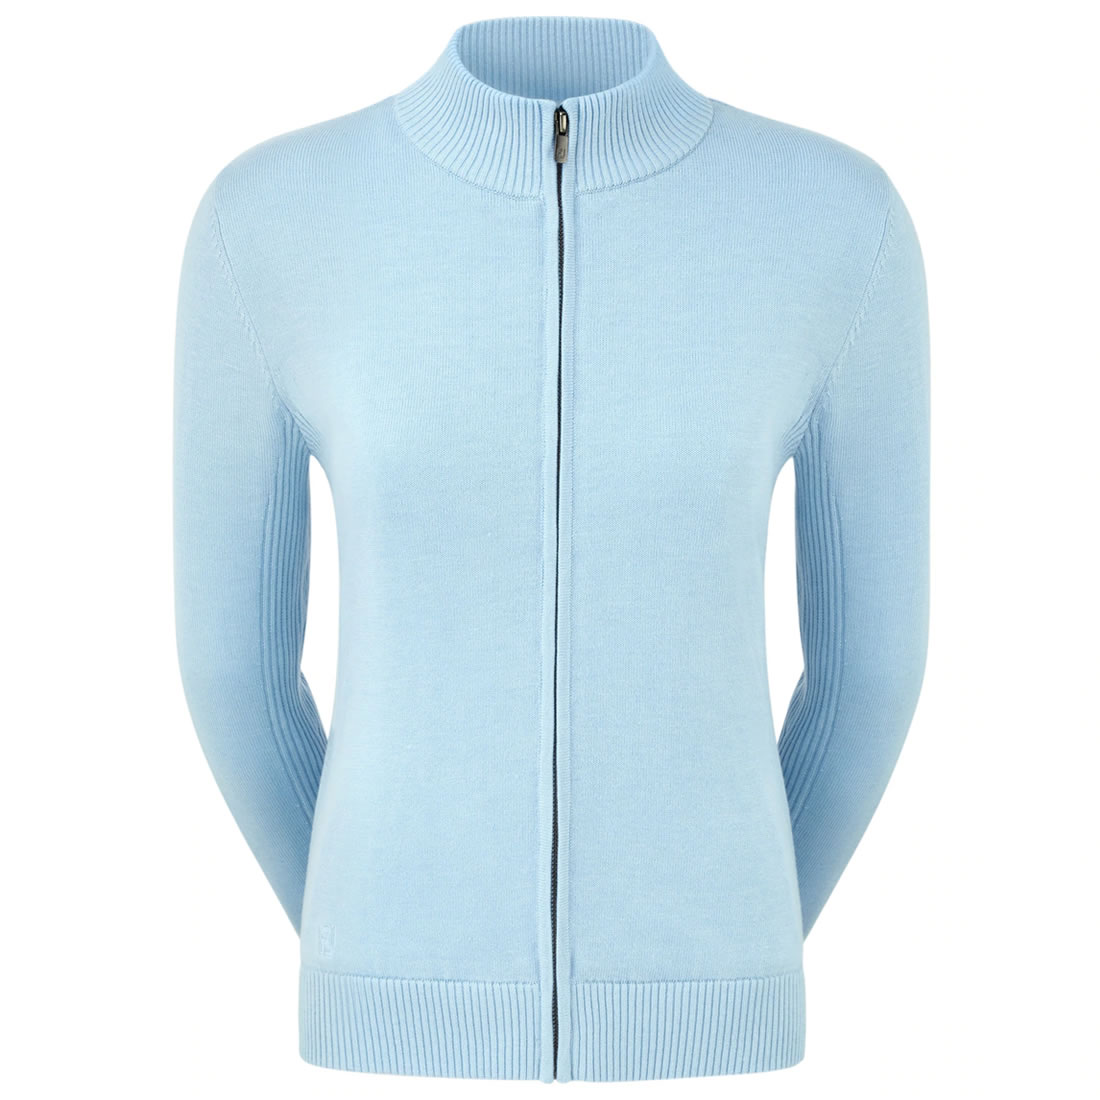 FootJoy Lined Full Zip Ladies Golf Sweater